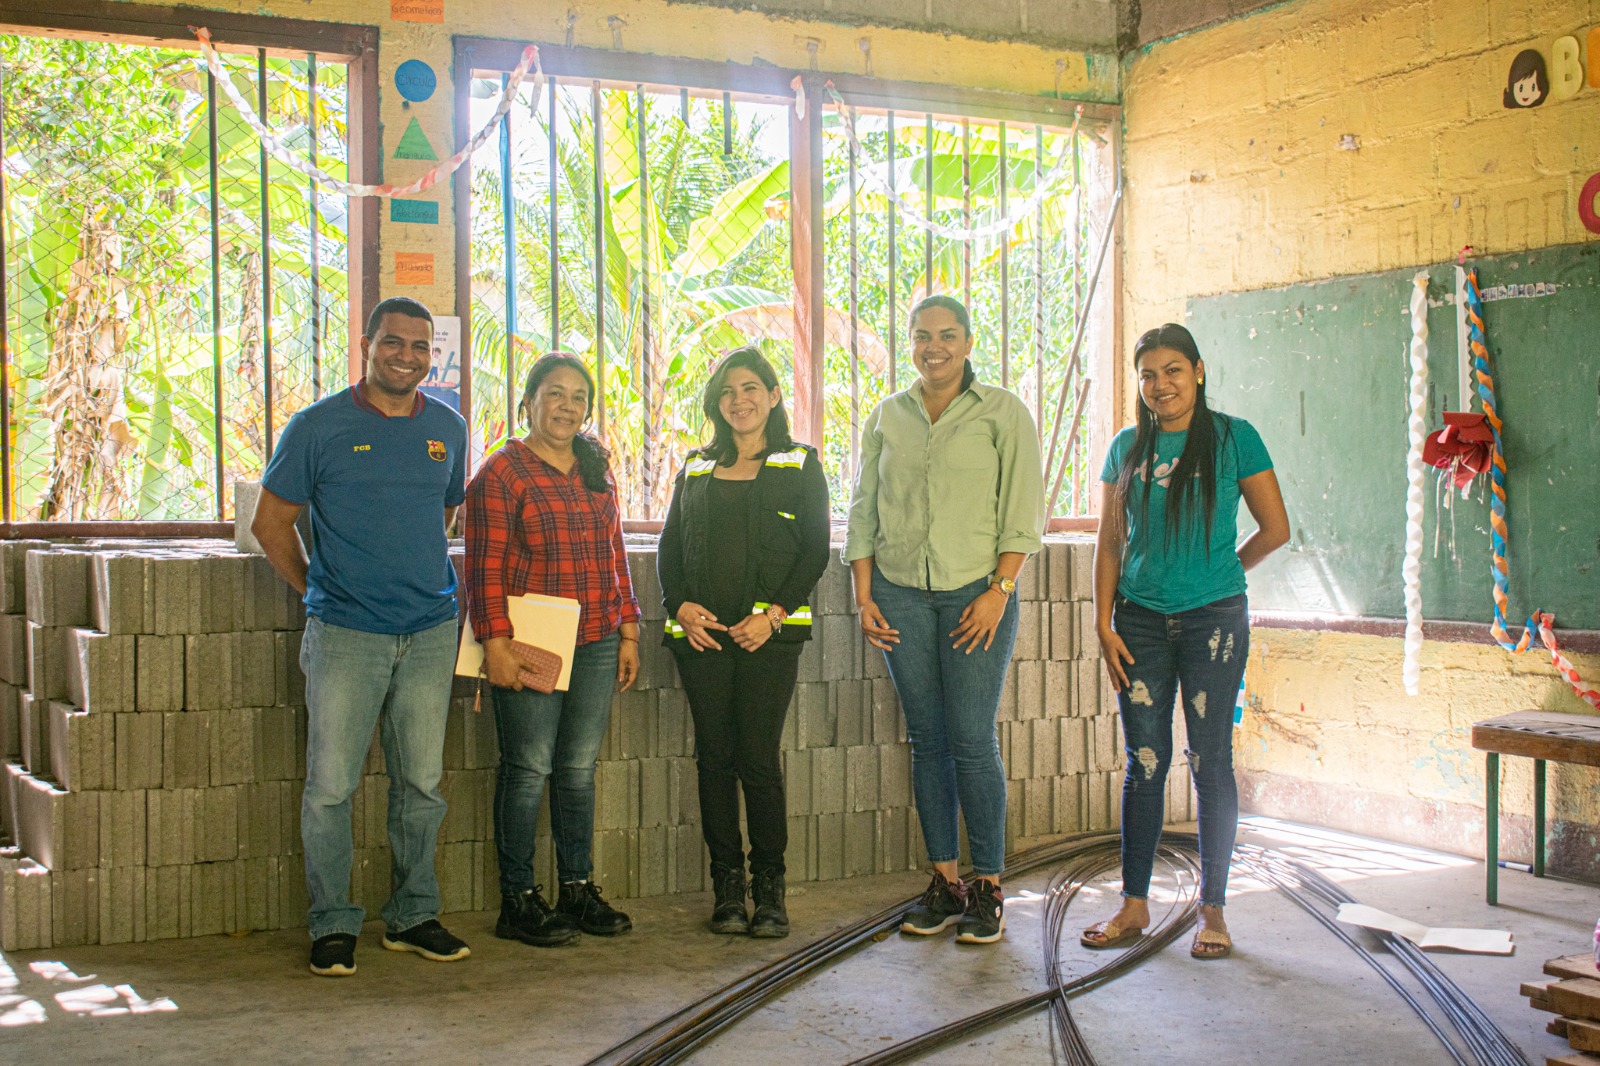 Inversiones Los Pinares dona materiales de construcción para reparar escuela beneficiando más de 100 niños en Tocoa